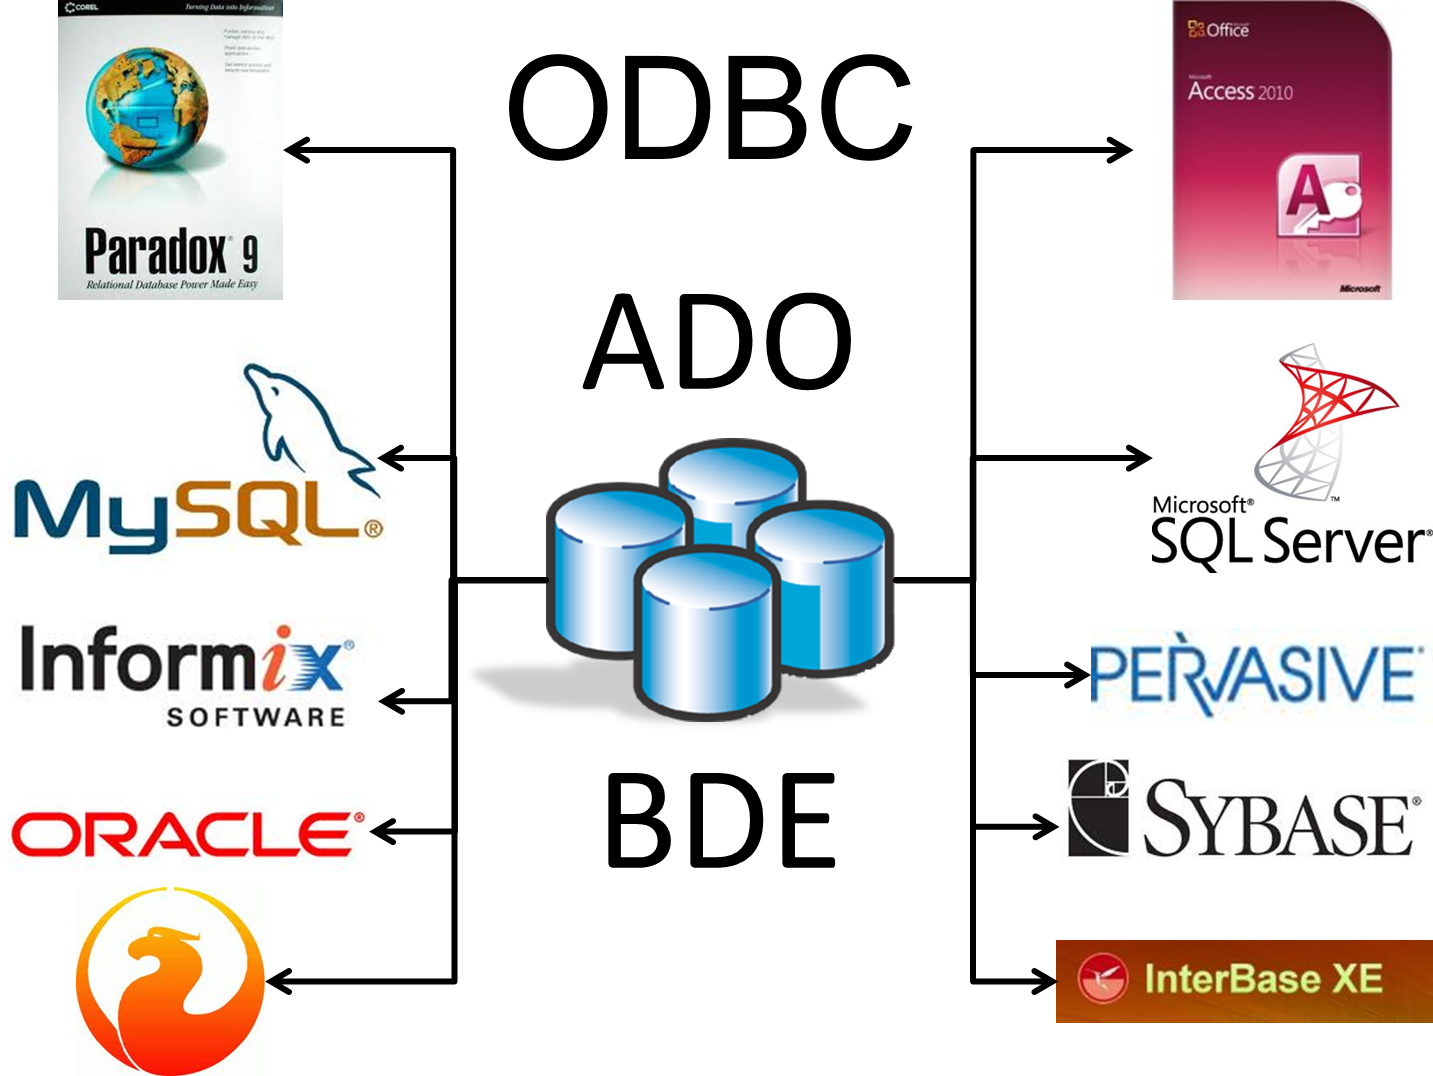 Io access. Система управления базами данных SQL Server. SQL Server базы данных. База данных SQL Server. СУБД Microsoft SQL Server база данных.